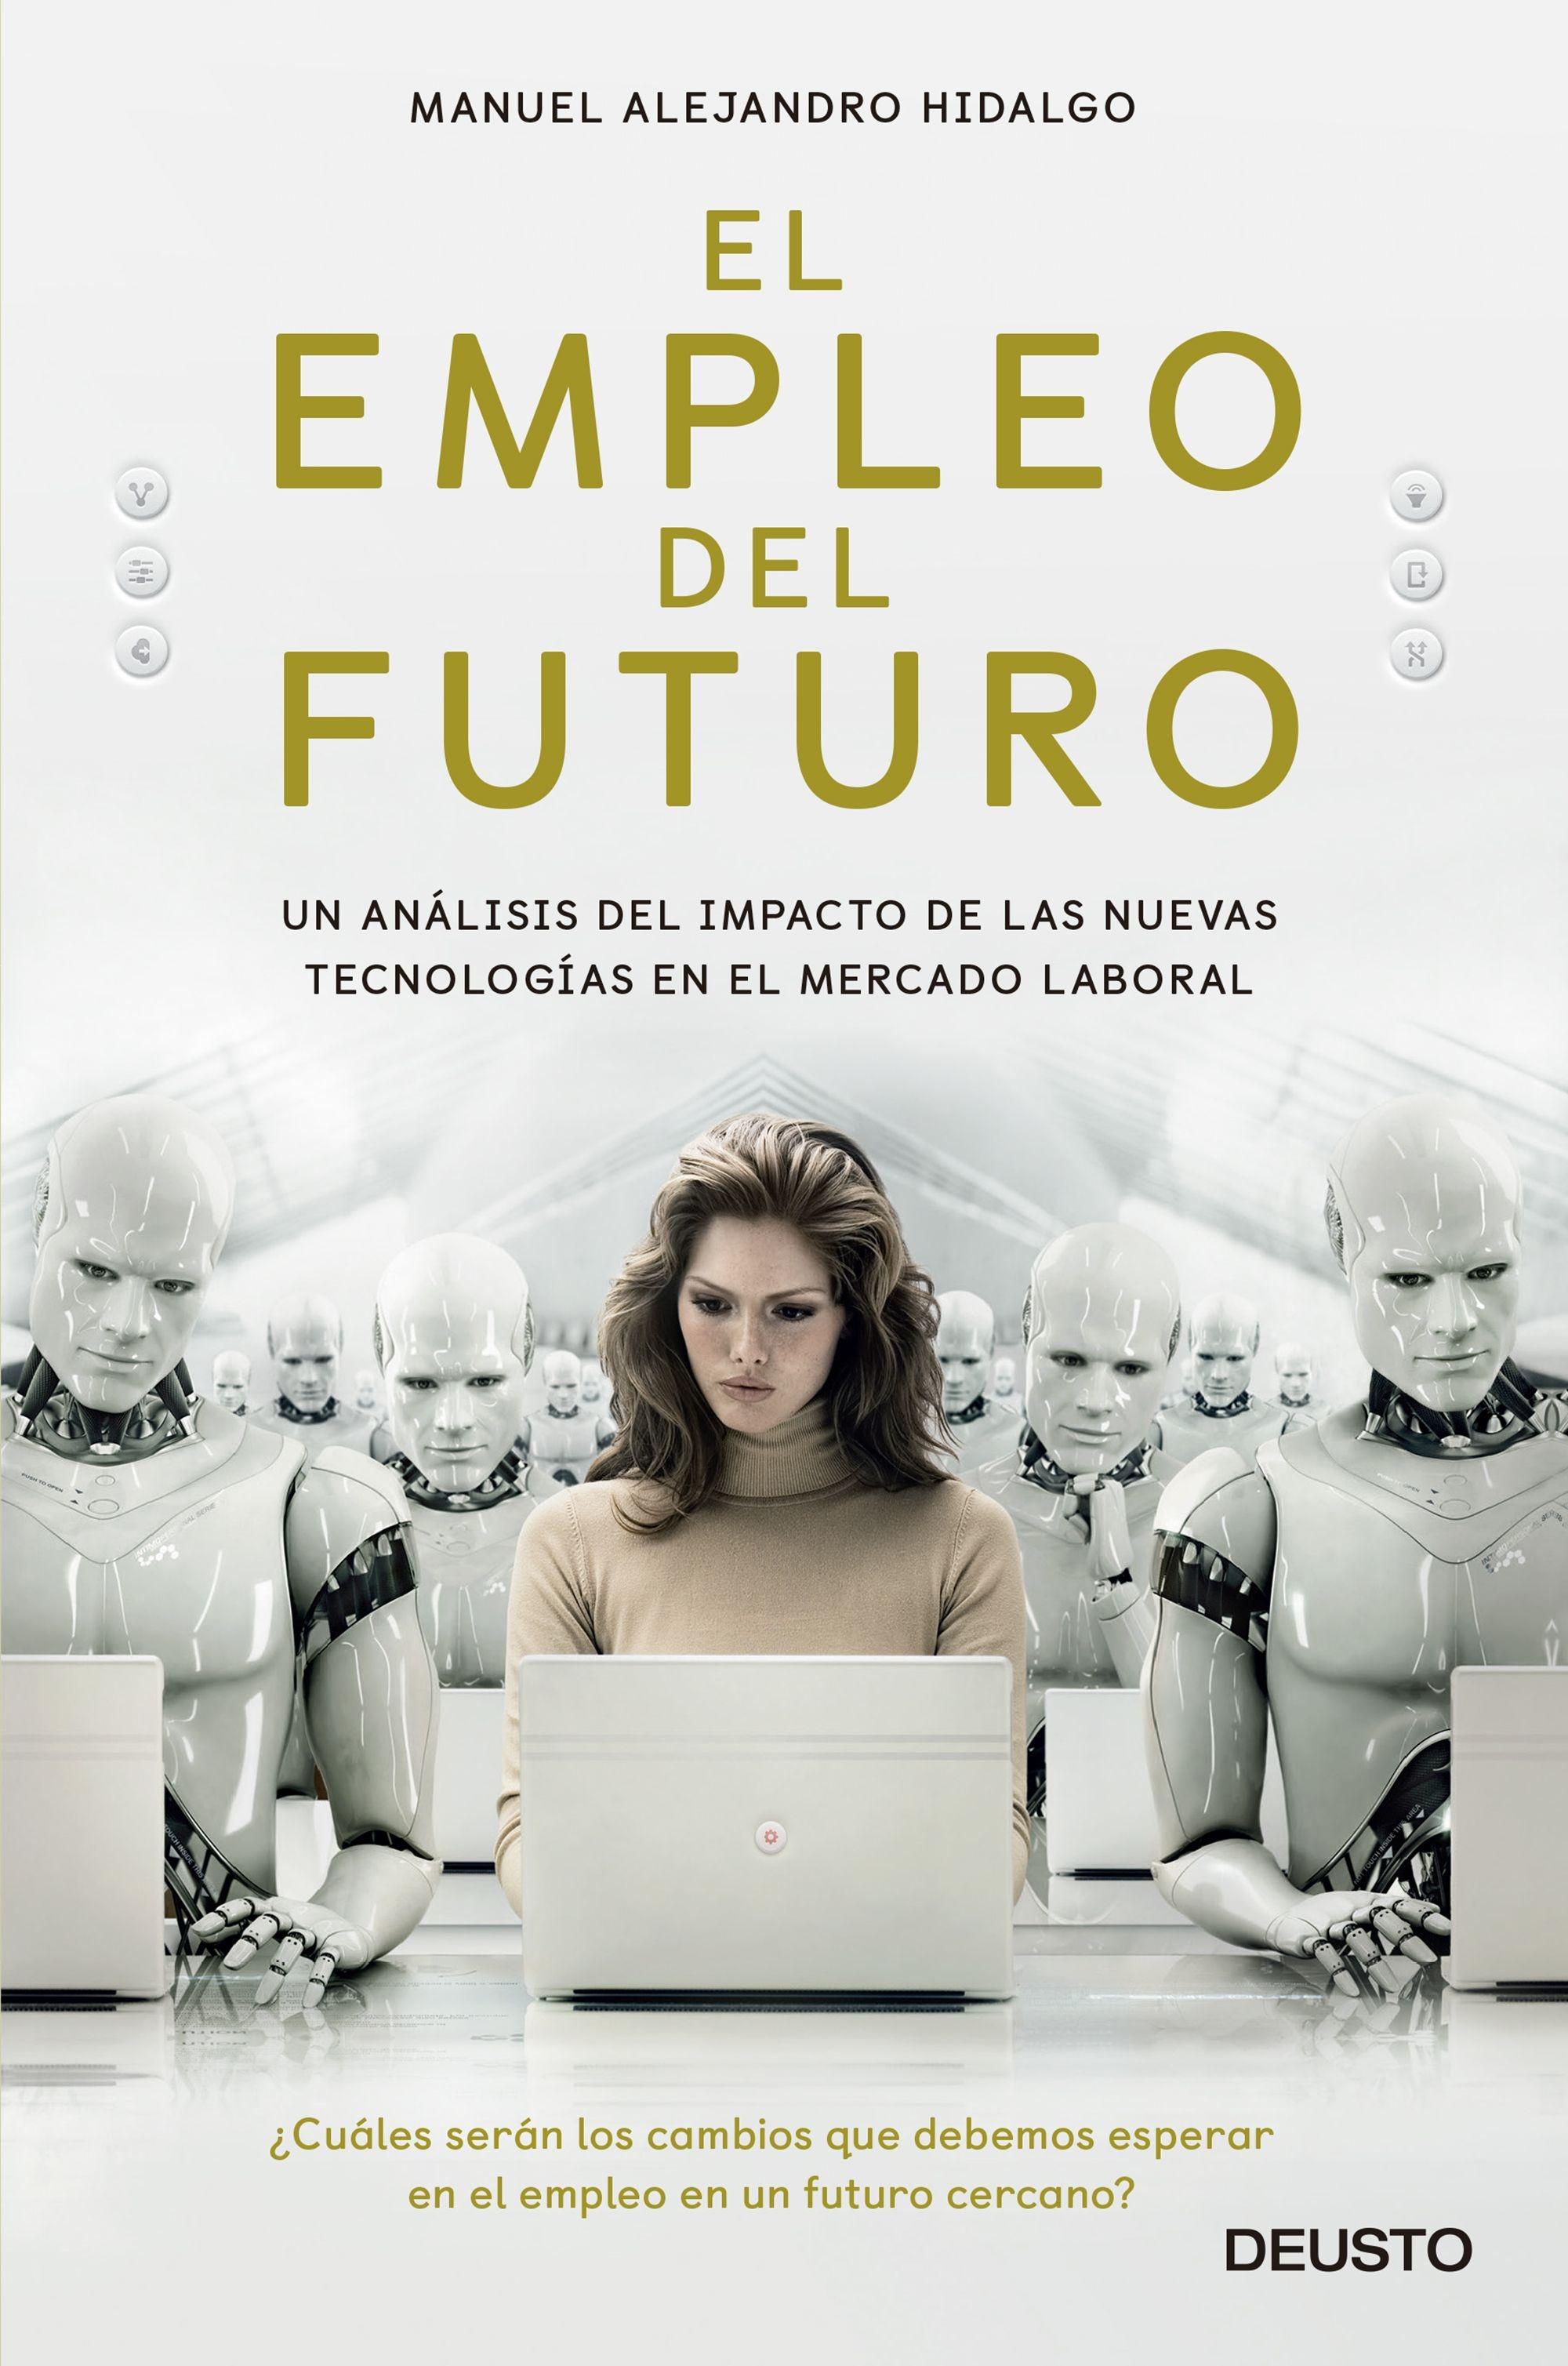 El Empleo del Futuro "Un Análisis del Impacto de las Nuevas Tecnologías en el Mercado Laboral". 